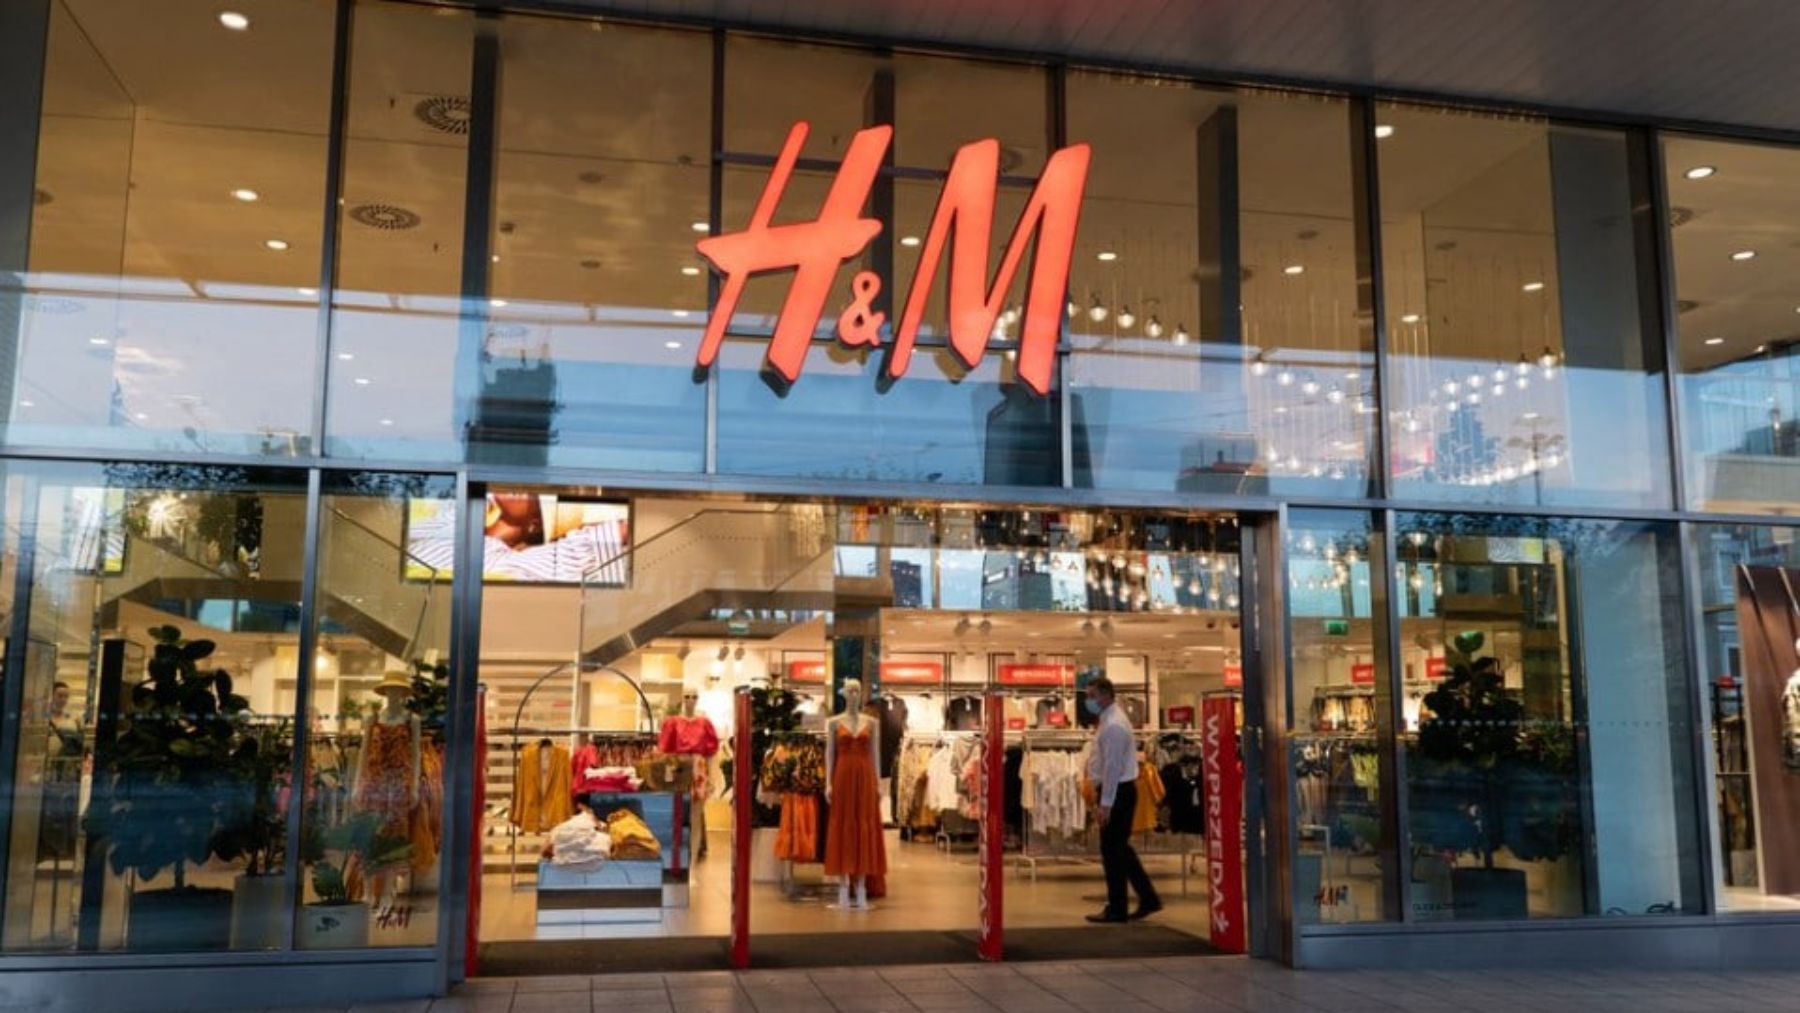 Tienda de H&M.